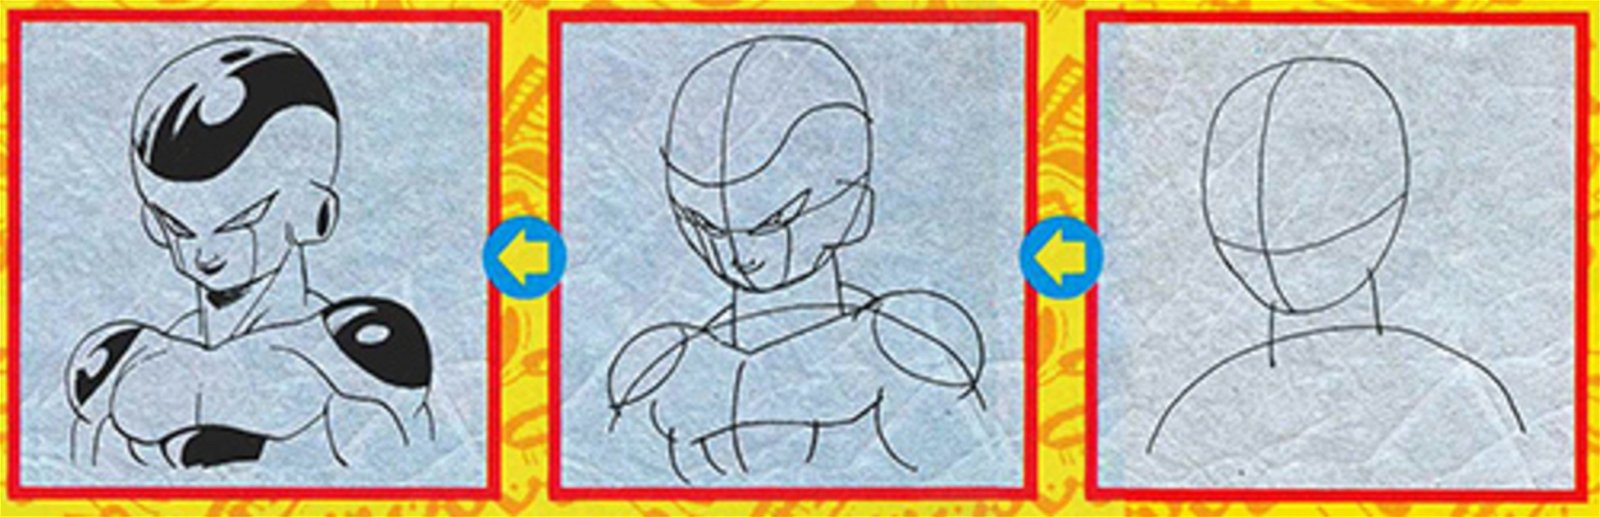 Dragon Ball: Así enseñó Akira Toriyama a dibujar los personajes de la saga